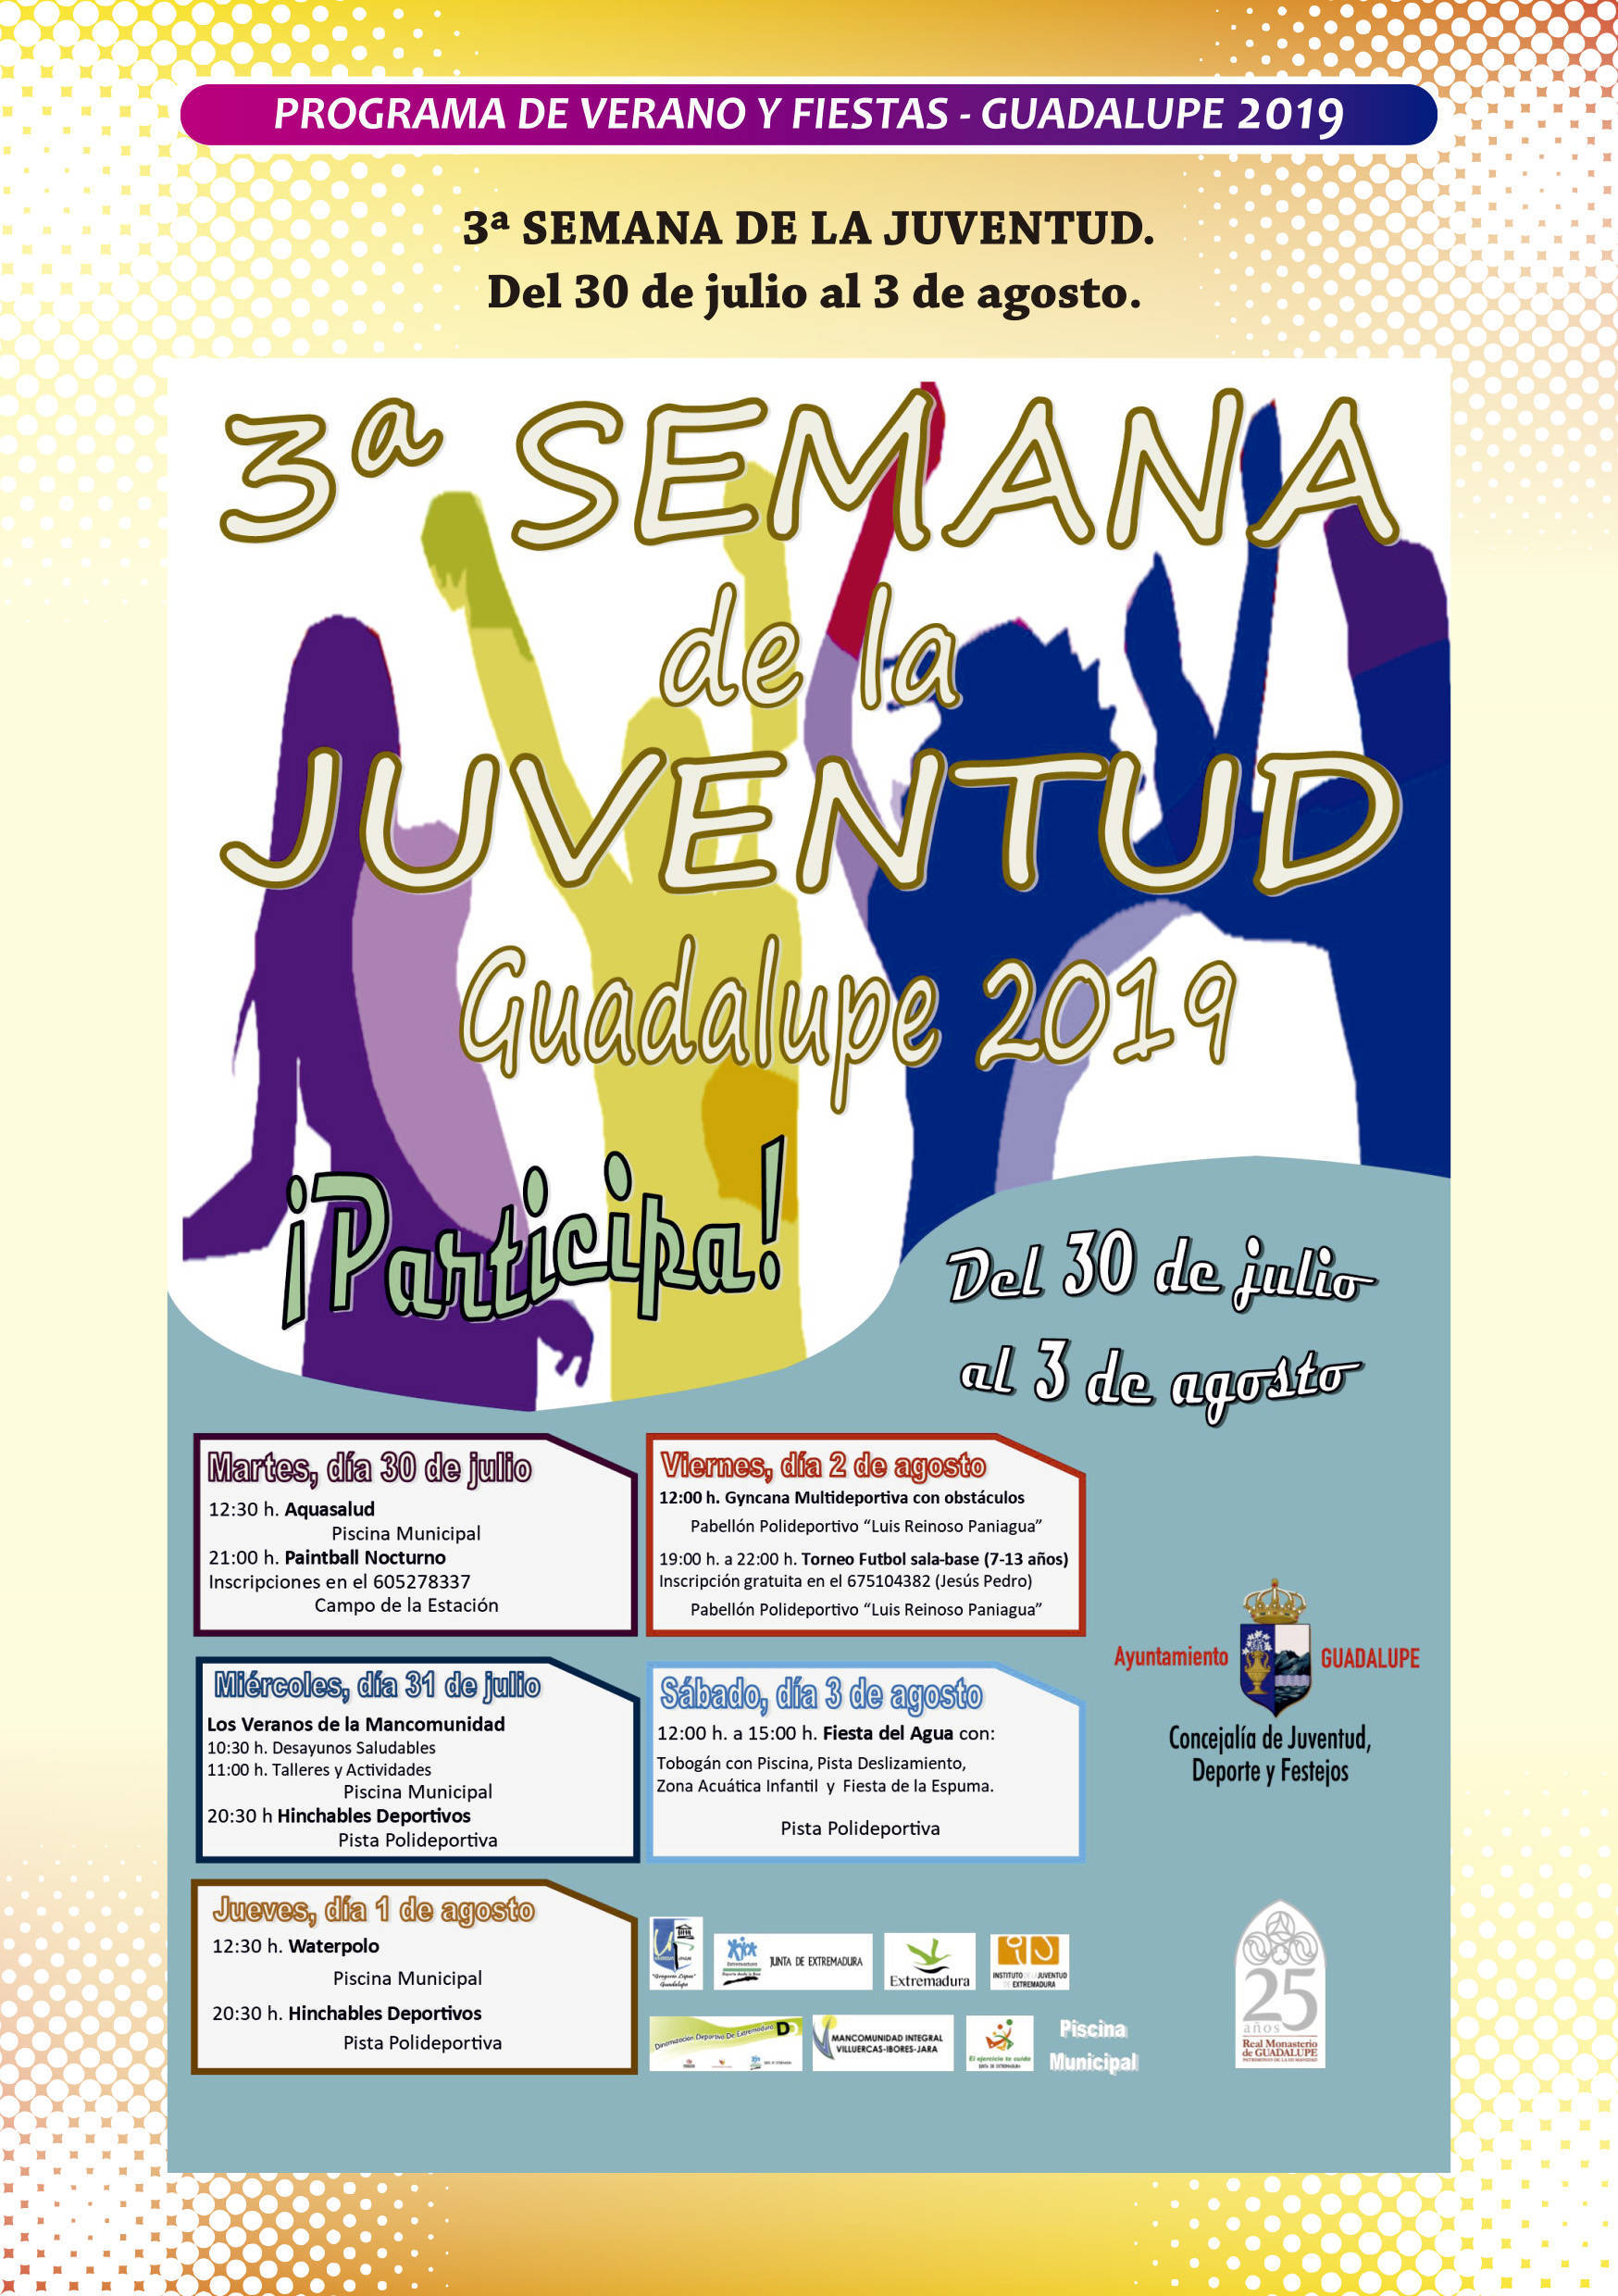 Programa de verano y fiestas 2019 - Guadalupe (Cáceres) 5